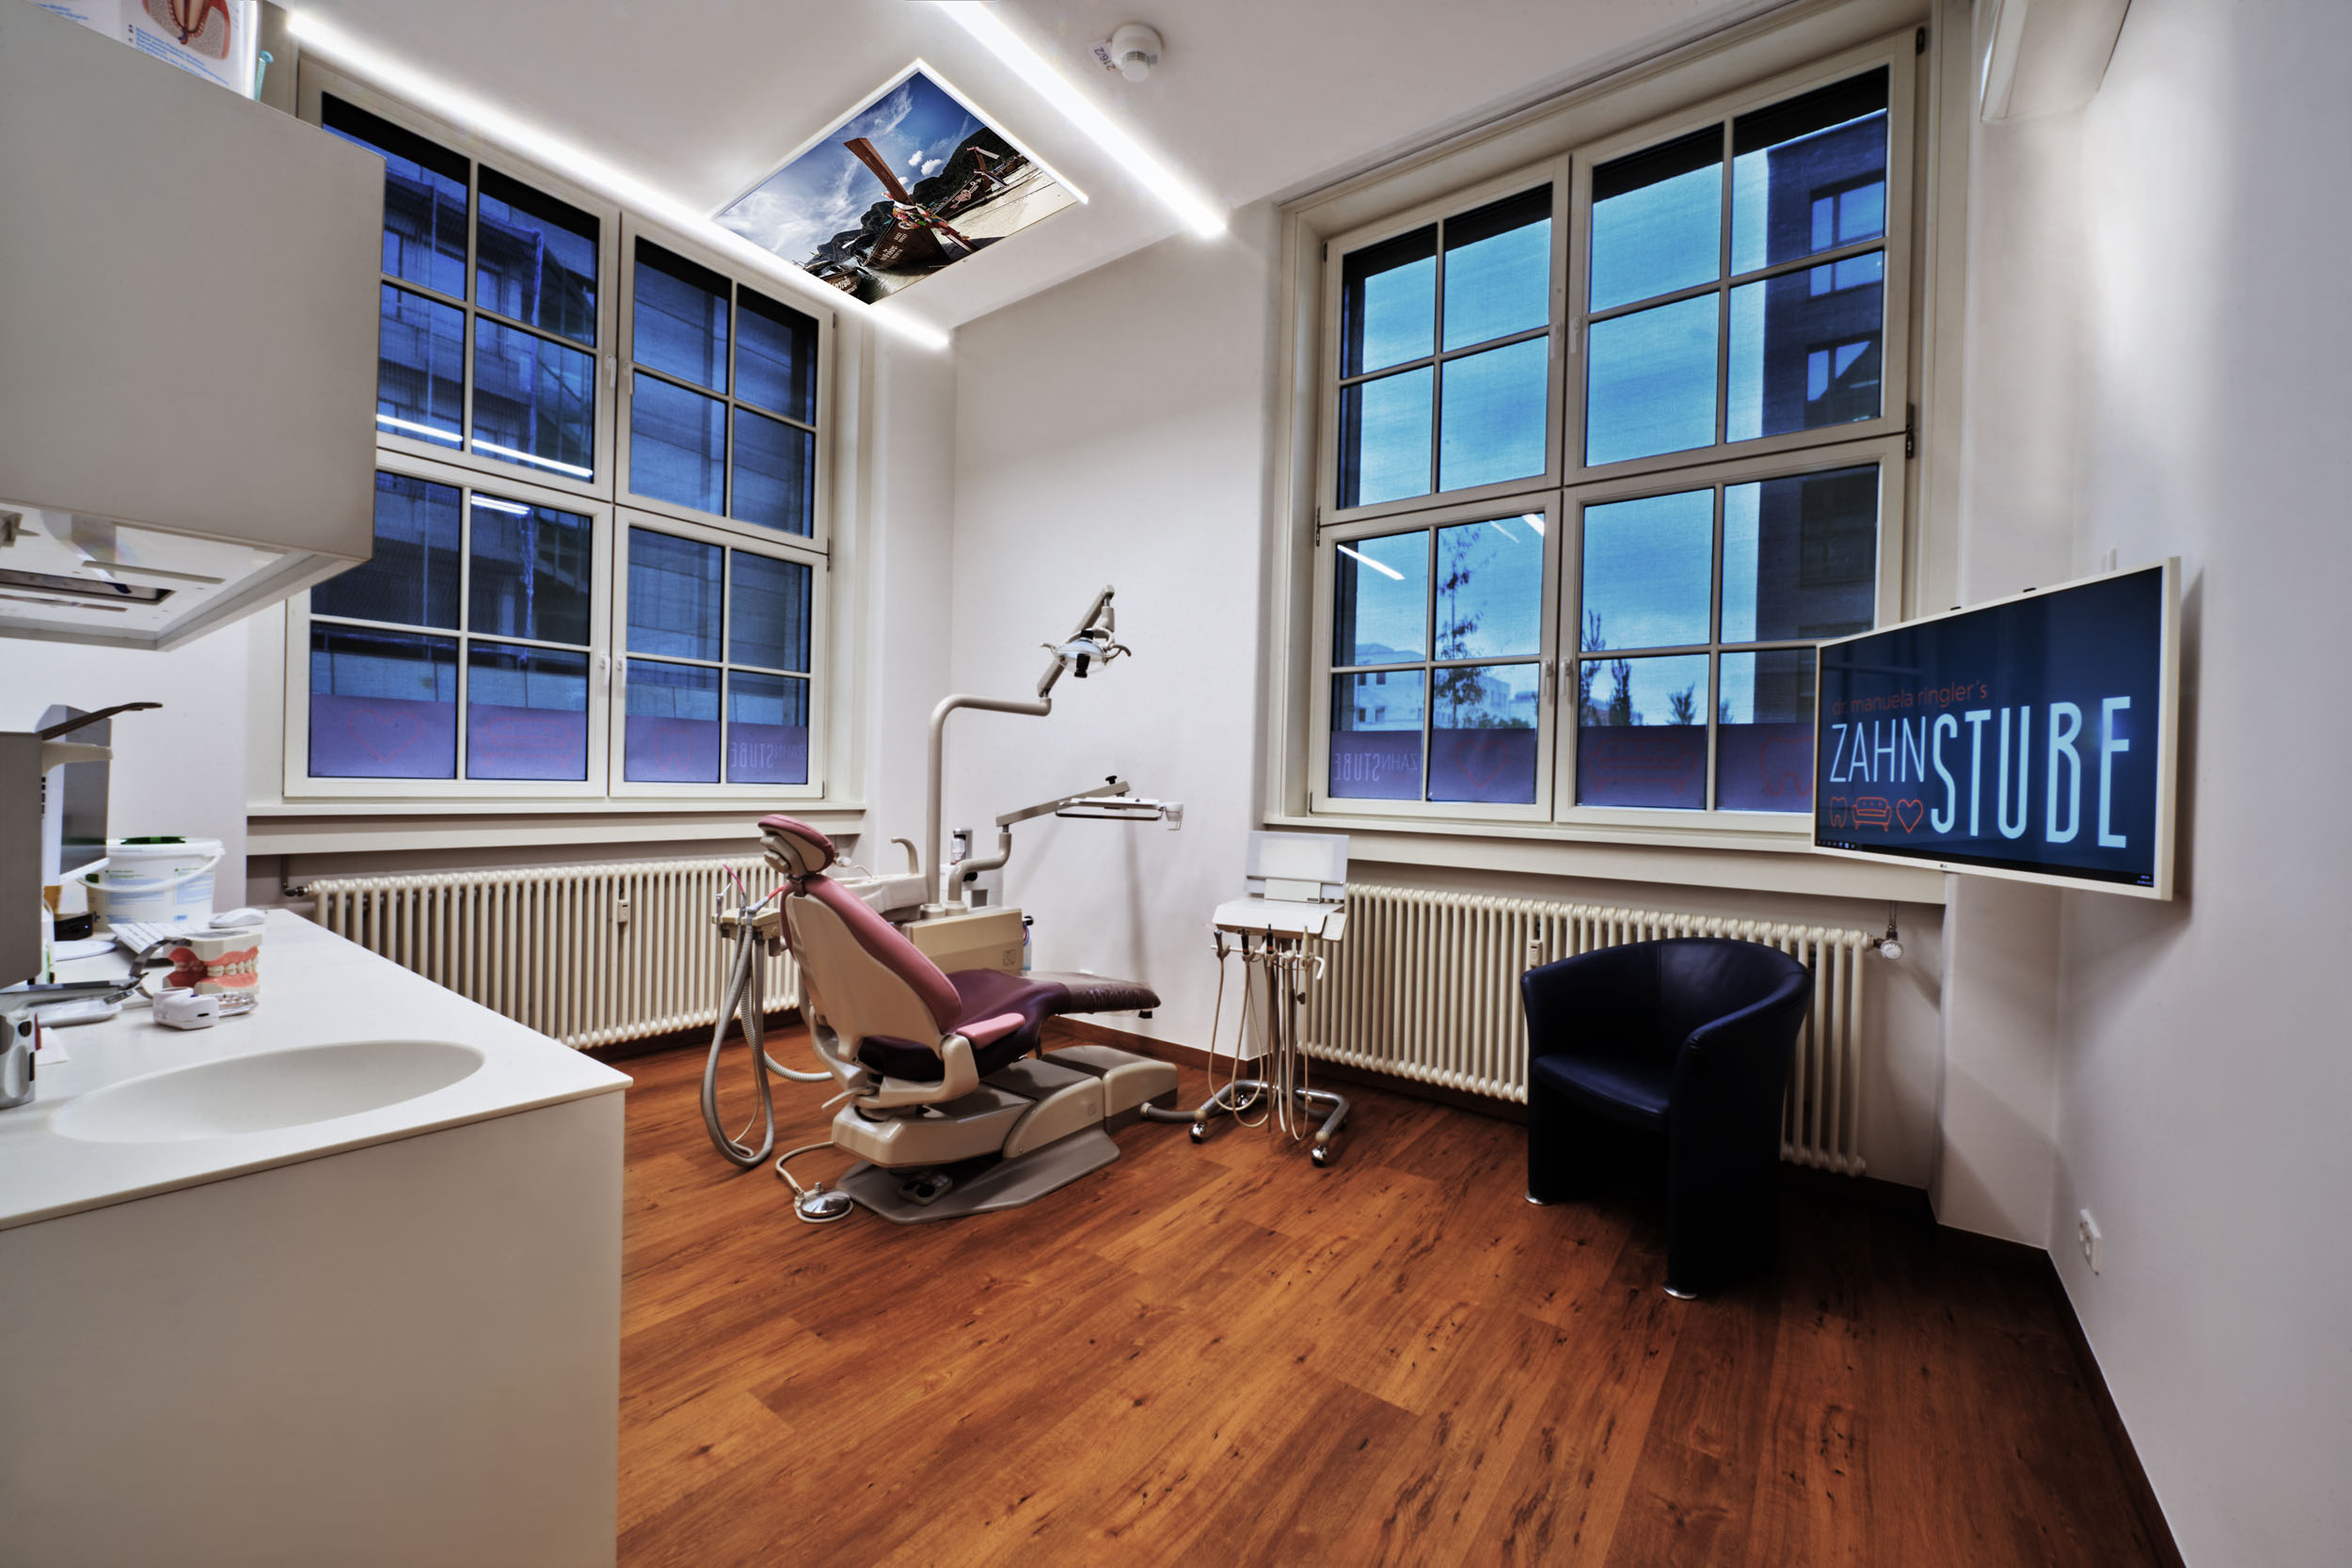 Ein Blick in einen Behandlungsraum der Zahnarztpraxis Zahnstube in Erlangen: Hier empfängt Zahnärztin Dr. Ringler ihre Patient*innen